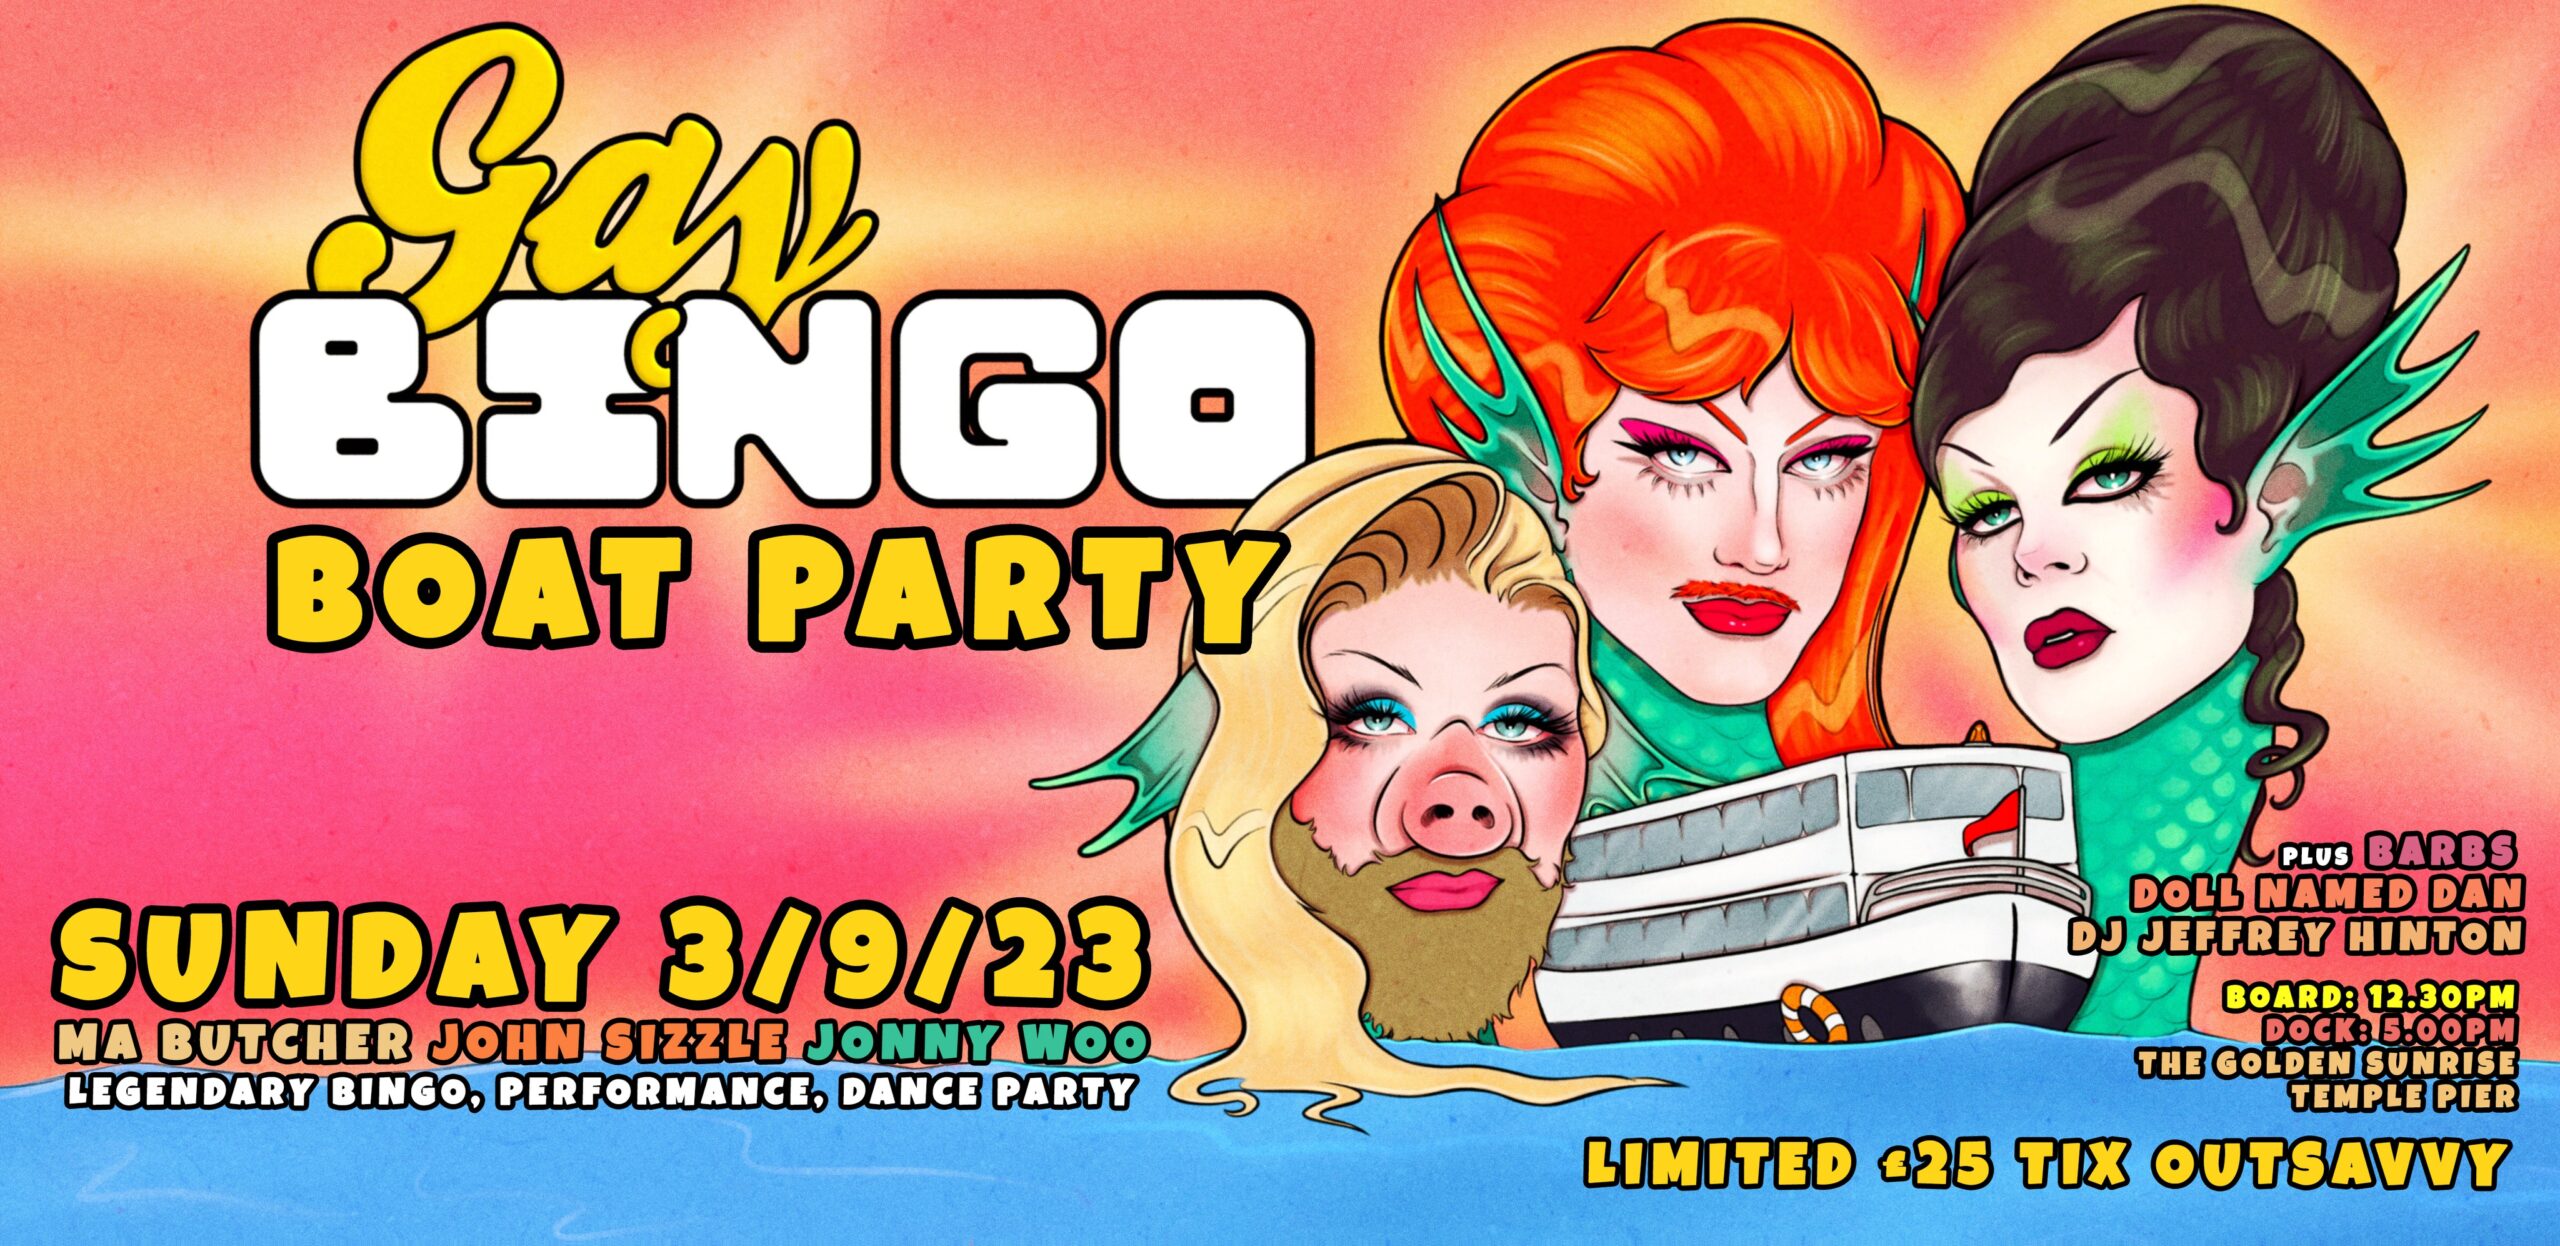 GAY BINGO BOAT PARTY!